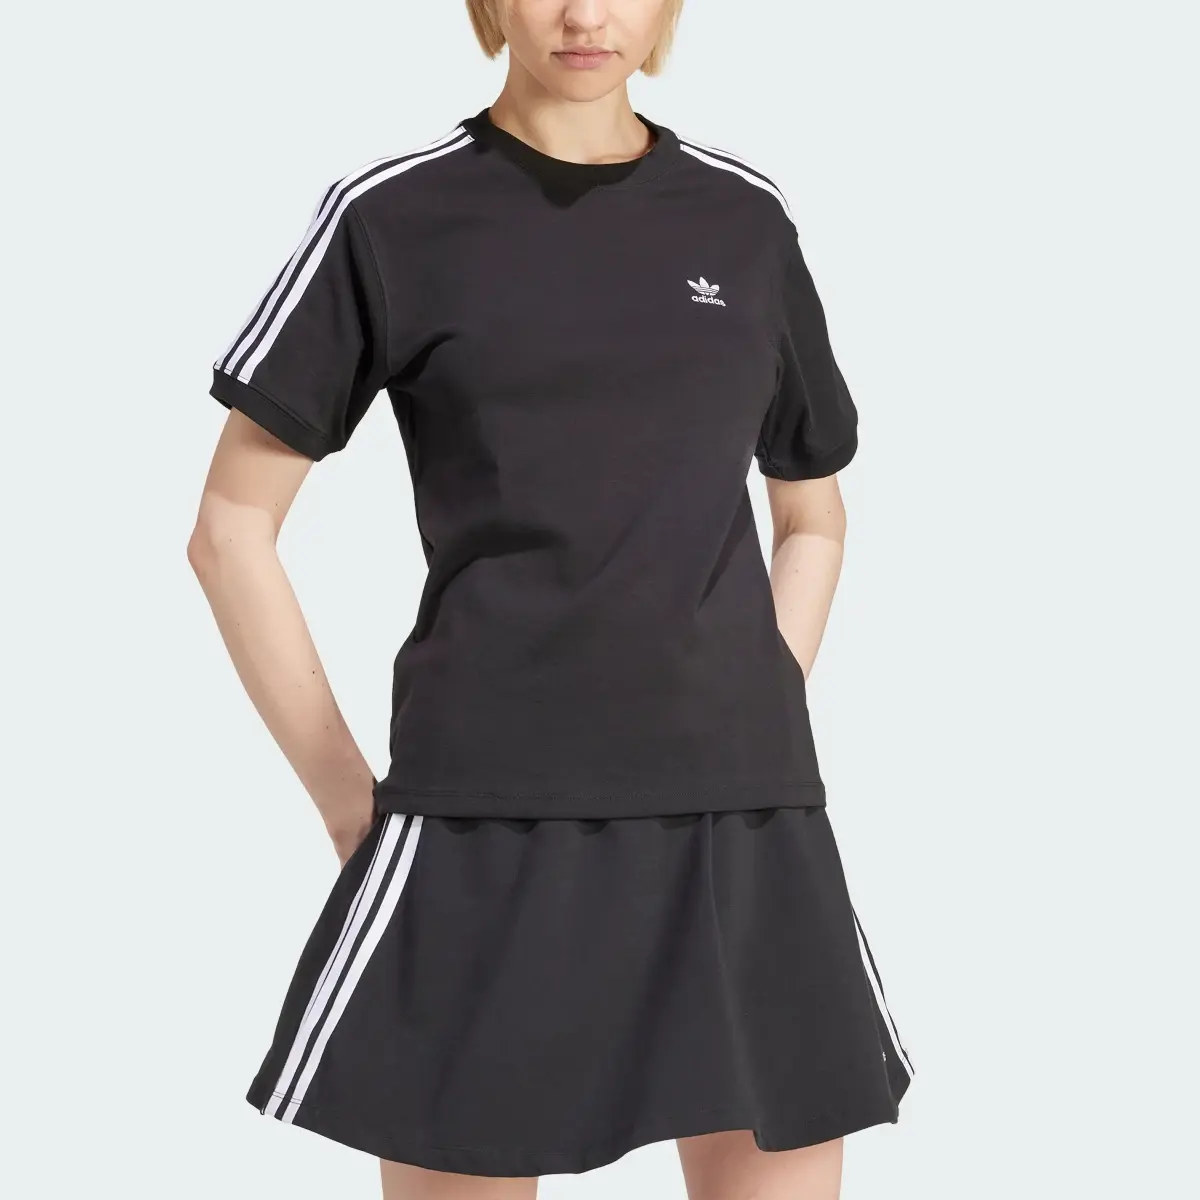 Adidas Koszulka 3-Stripes. 1